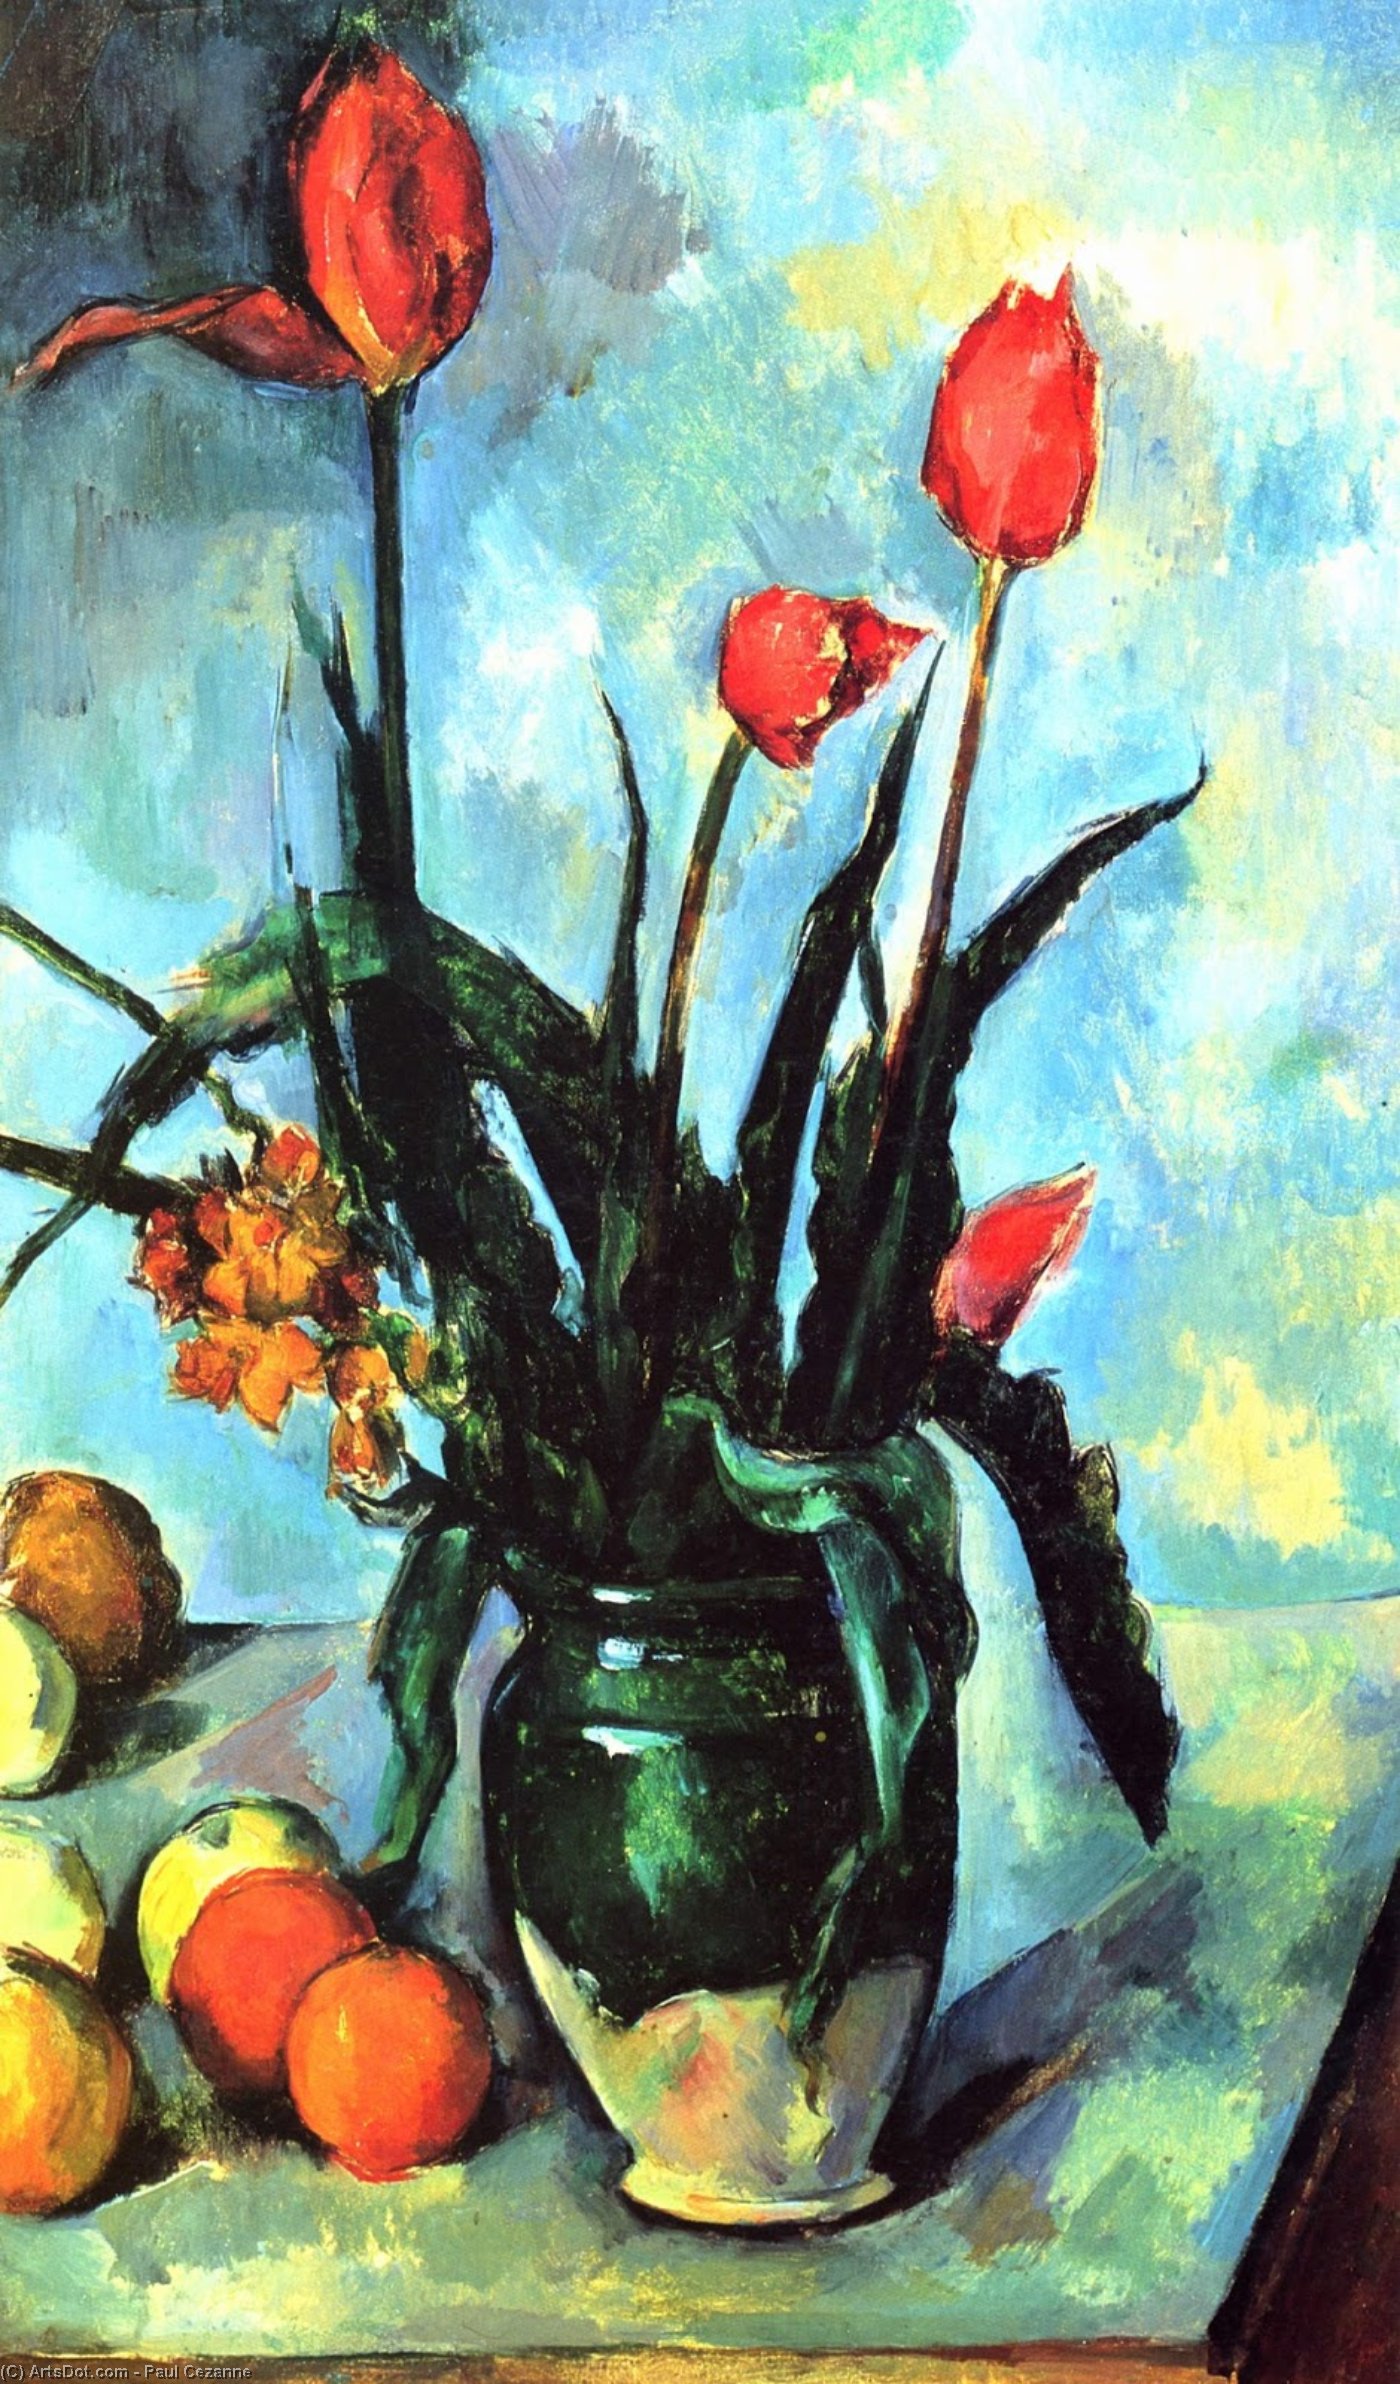 WikiOO.org - Encyclopedia of Fine Arts - Maleri, Artwork Paul Cezanne - Tulips in a Vase